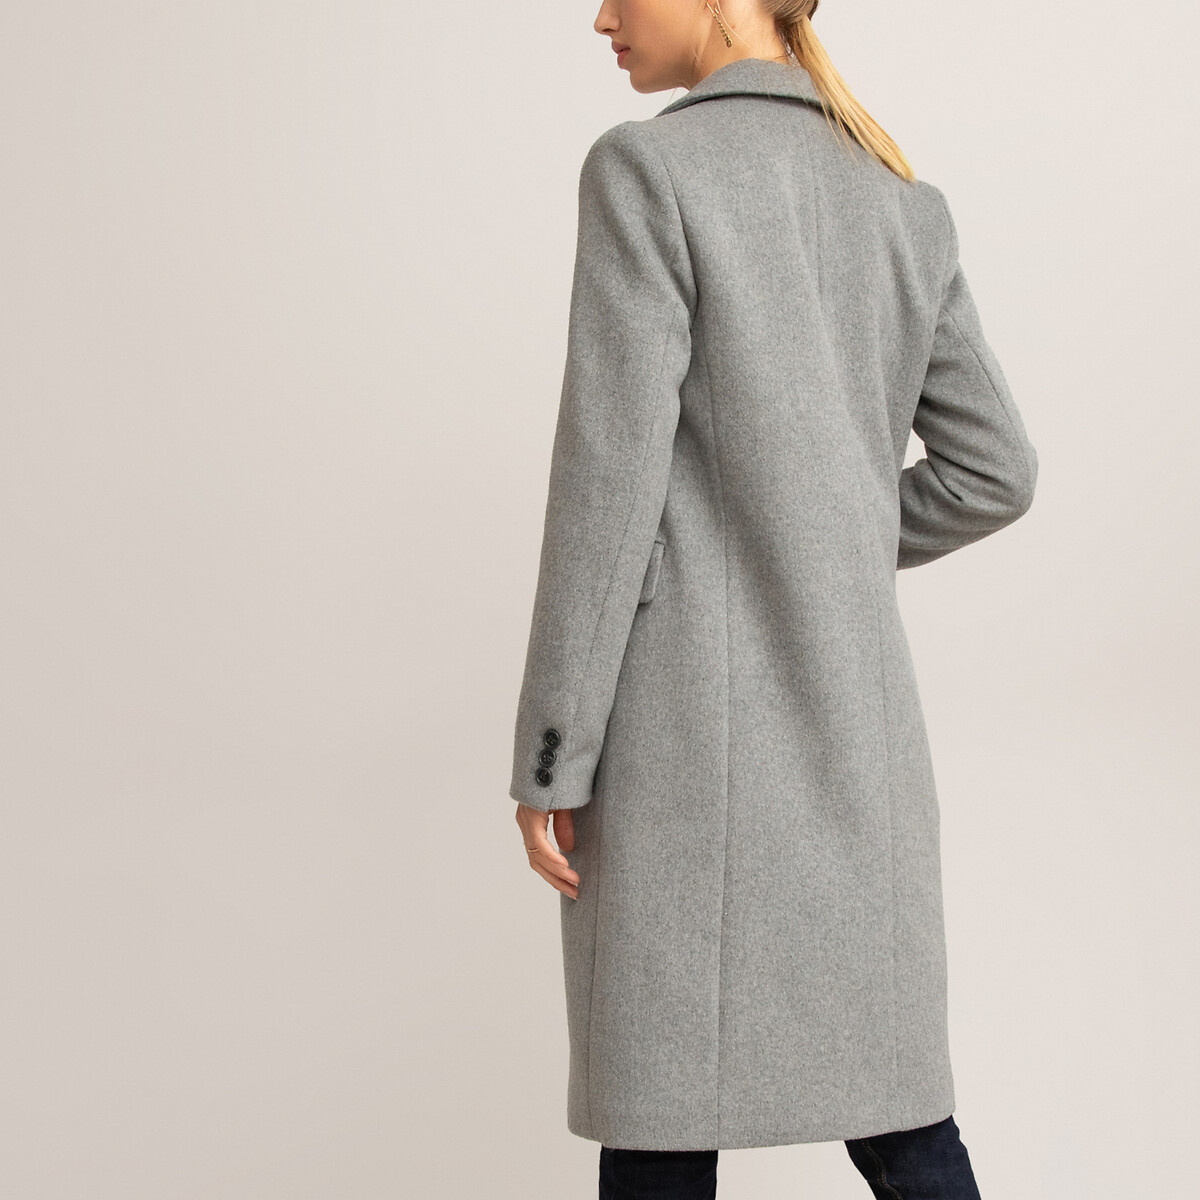 Пальто La Redoute Средней длины прямое 34 (FR) - 40 (RUS) серый, размер 34 (FR) - 40 (RUS) Средней длины прямое 34 (FR) - 40 (RUS) серый - фото 3